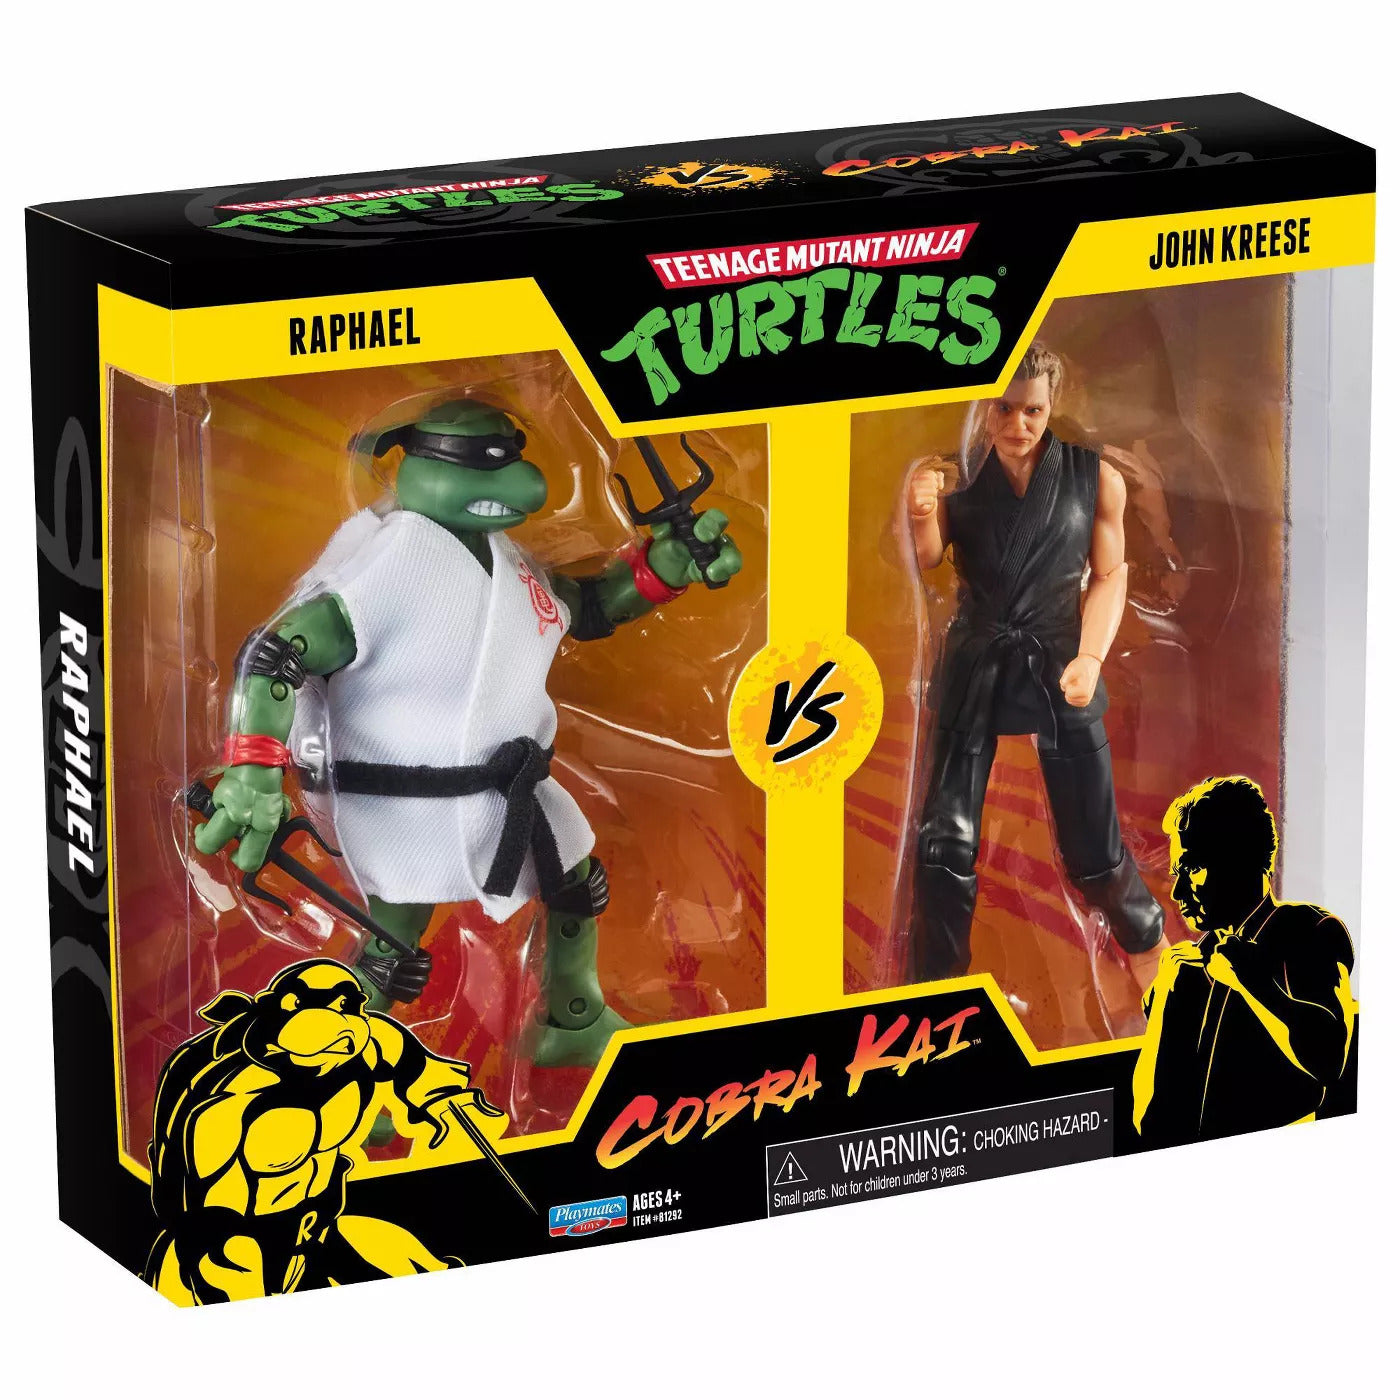 TMNT vs Cobra Kai 2 Pack - Raphael vs John Kreese